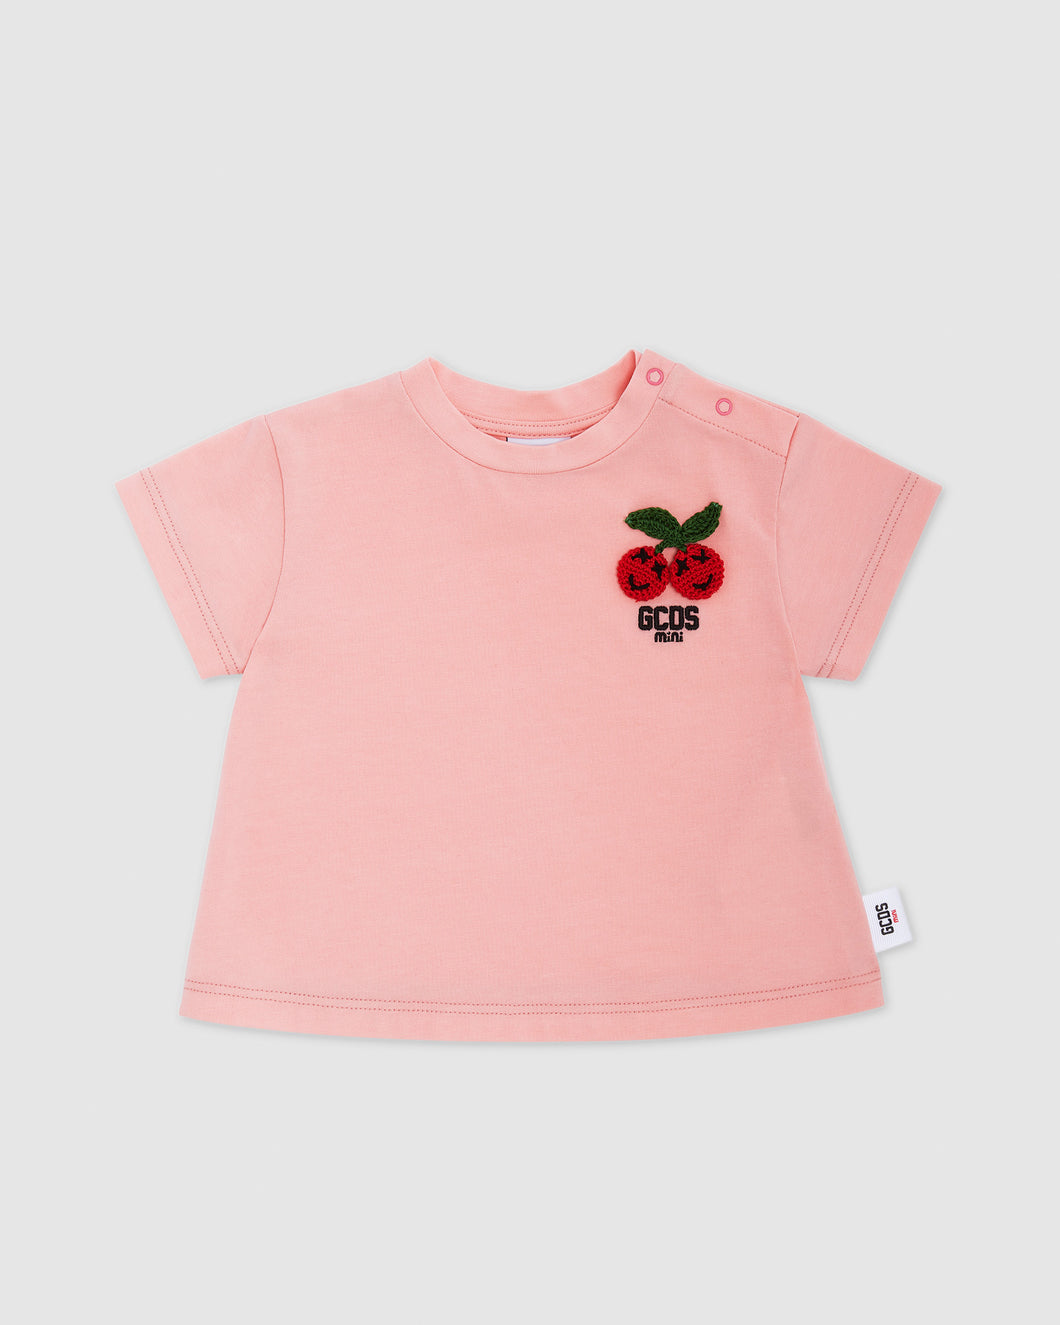 Baby Cherry t-shirt: Girl T-Shirts  Pink | GCDS